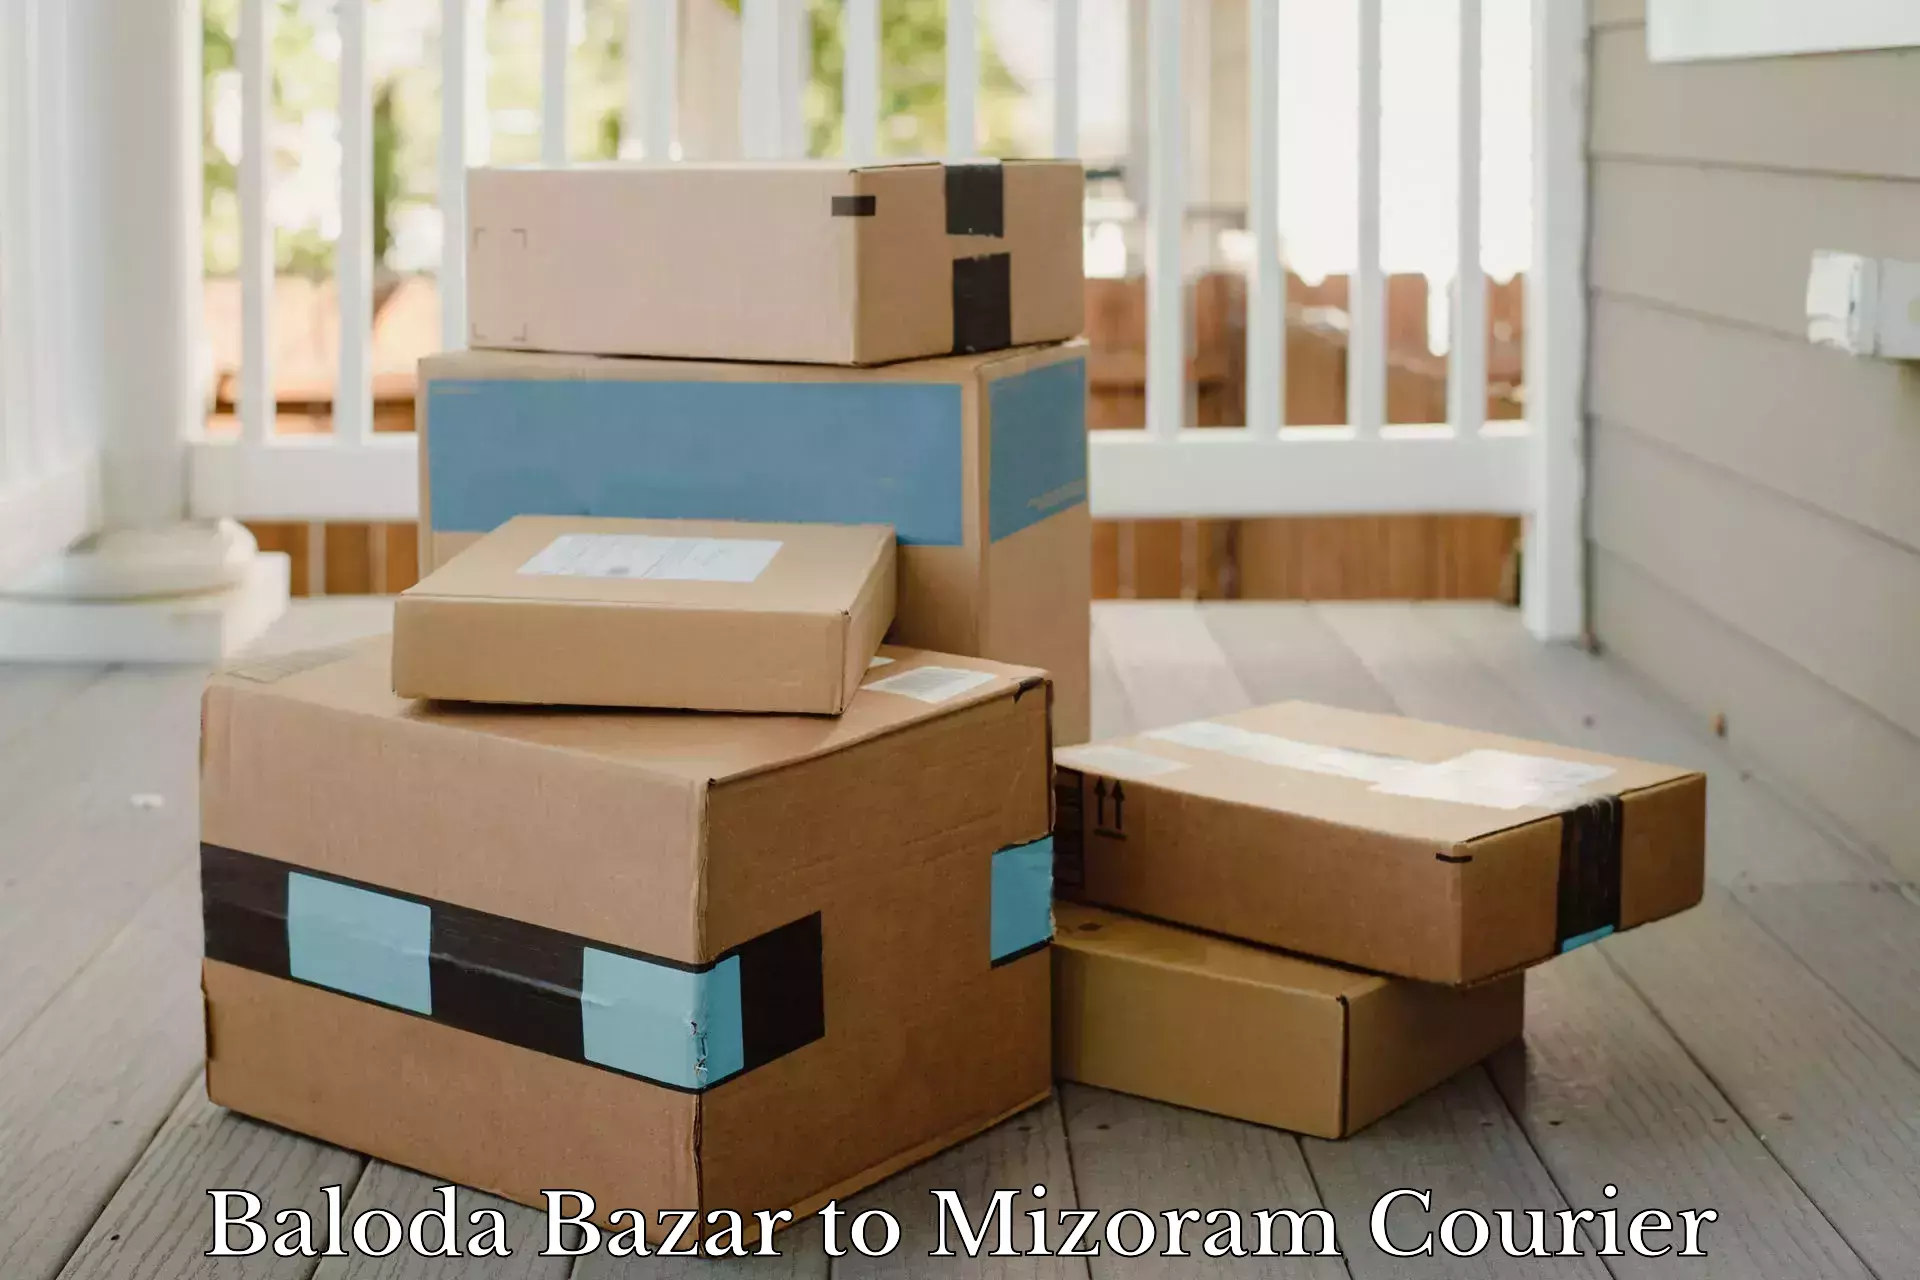 Cargo delivery service Baloda Bazar to Aizawl